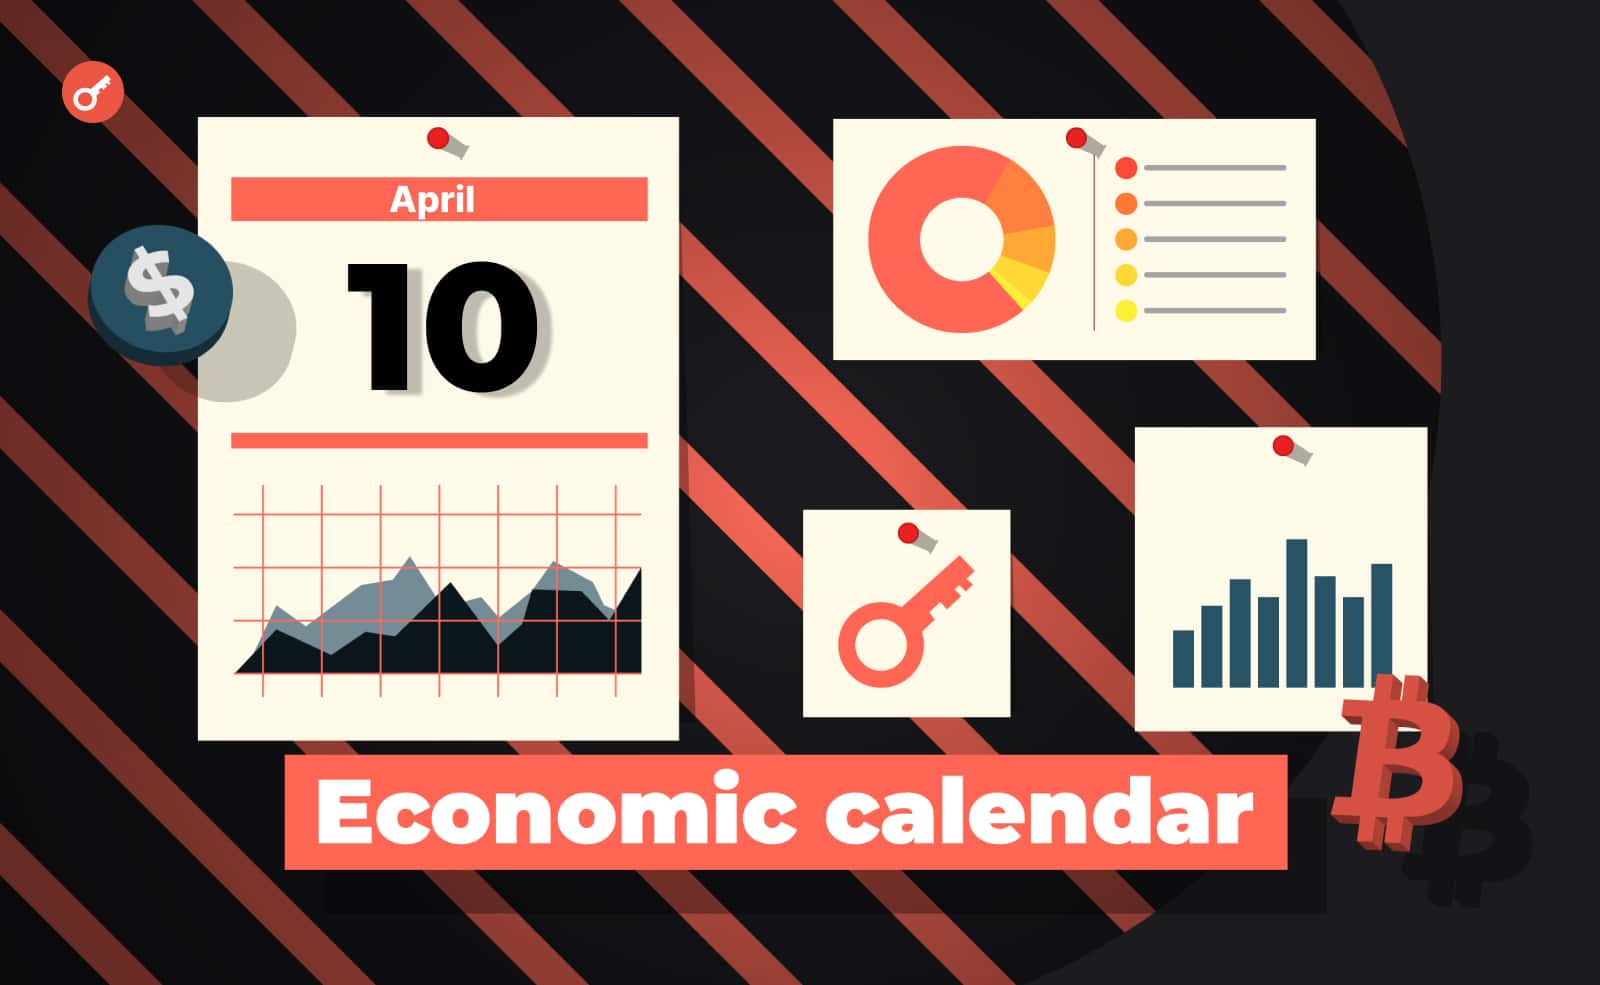 Экономический календарь 10-14 апреля:  показатели Уолл-Стрит, инфляция в США и Ethereum Shanghai. Заглавный коллаж новости.